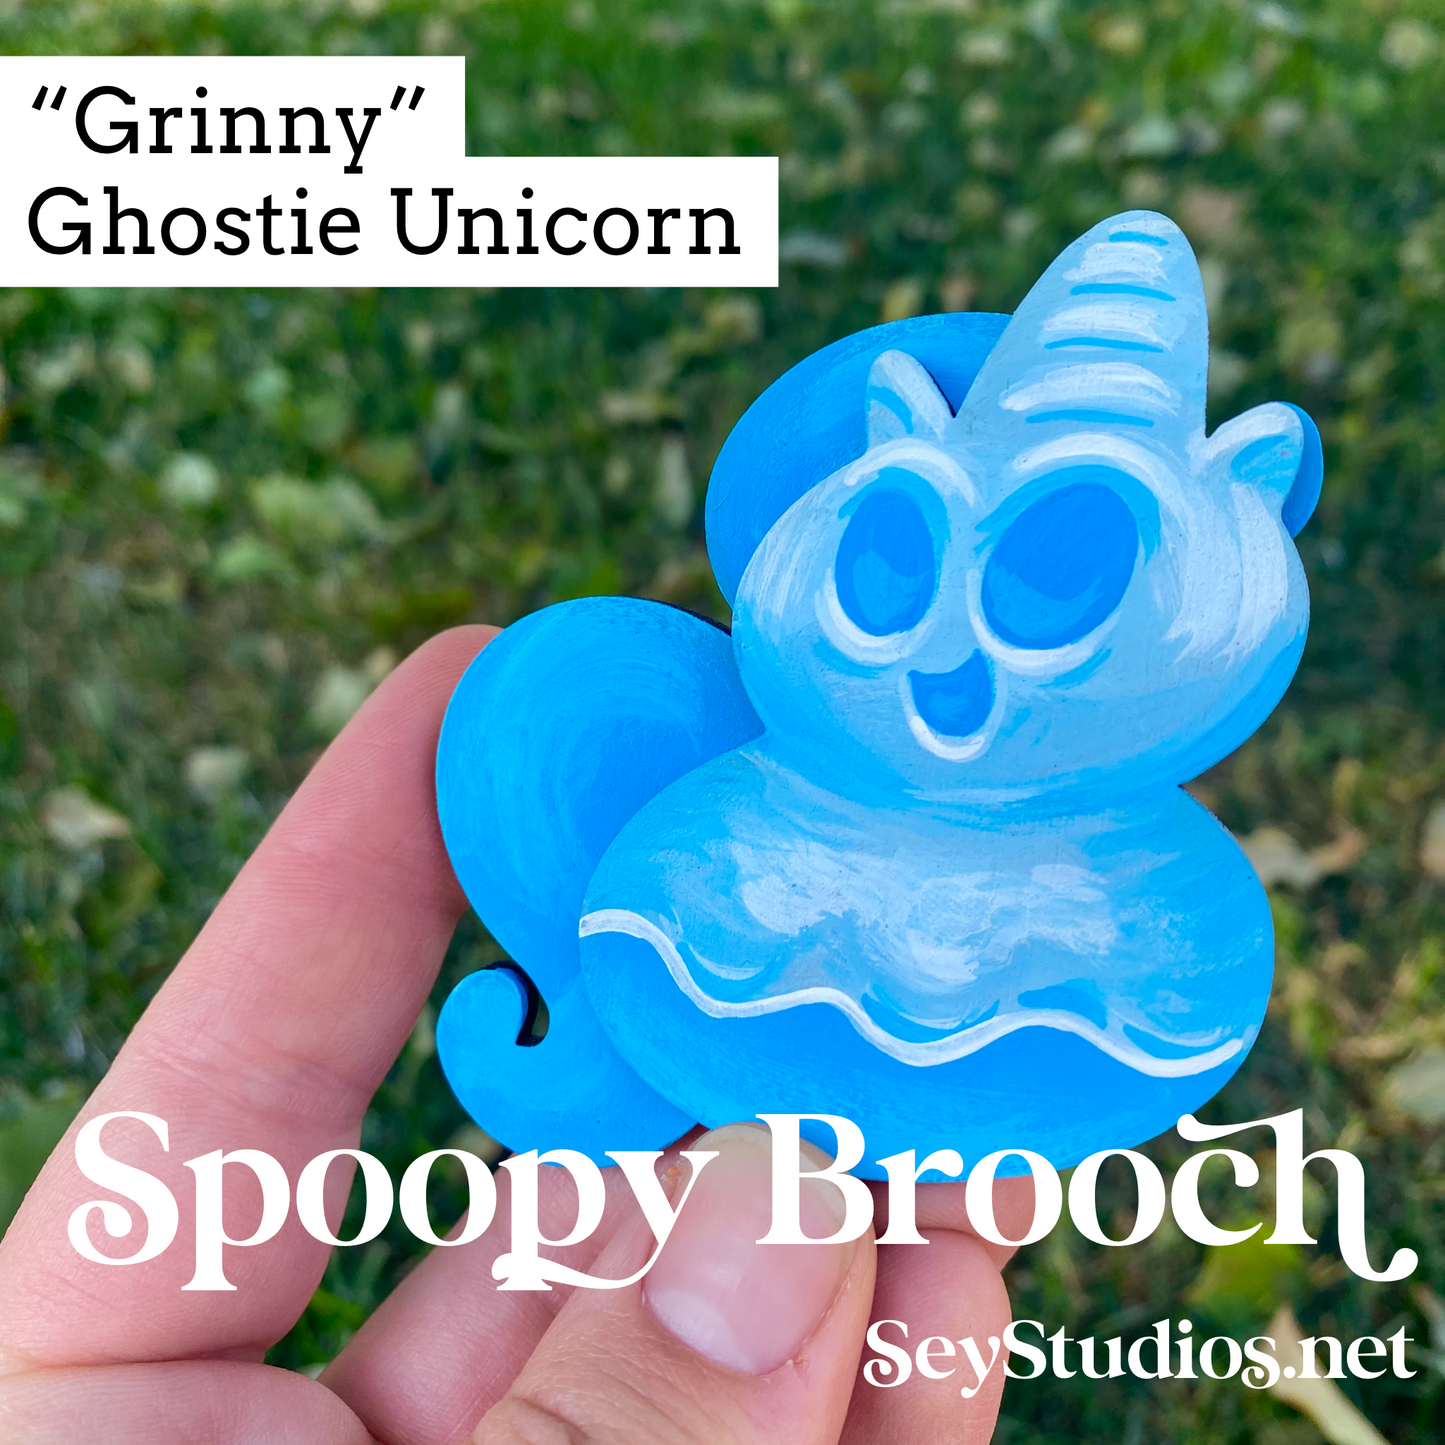 Original - “Grinny, Ghost Unicorn” Spoopy Brooch